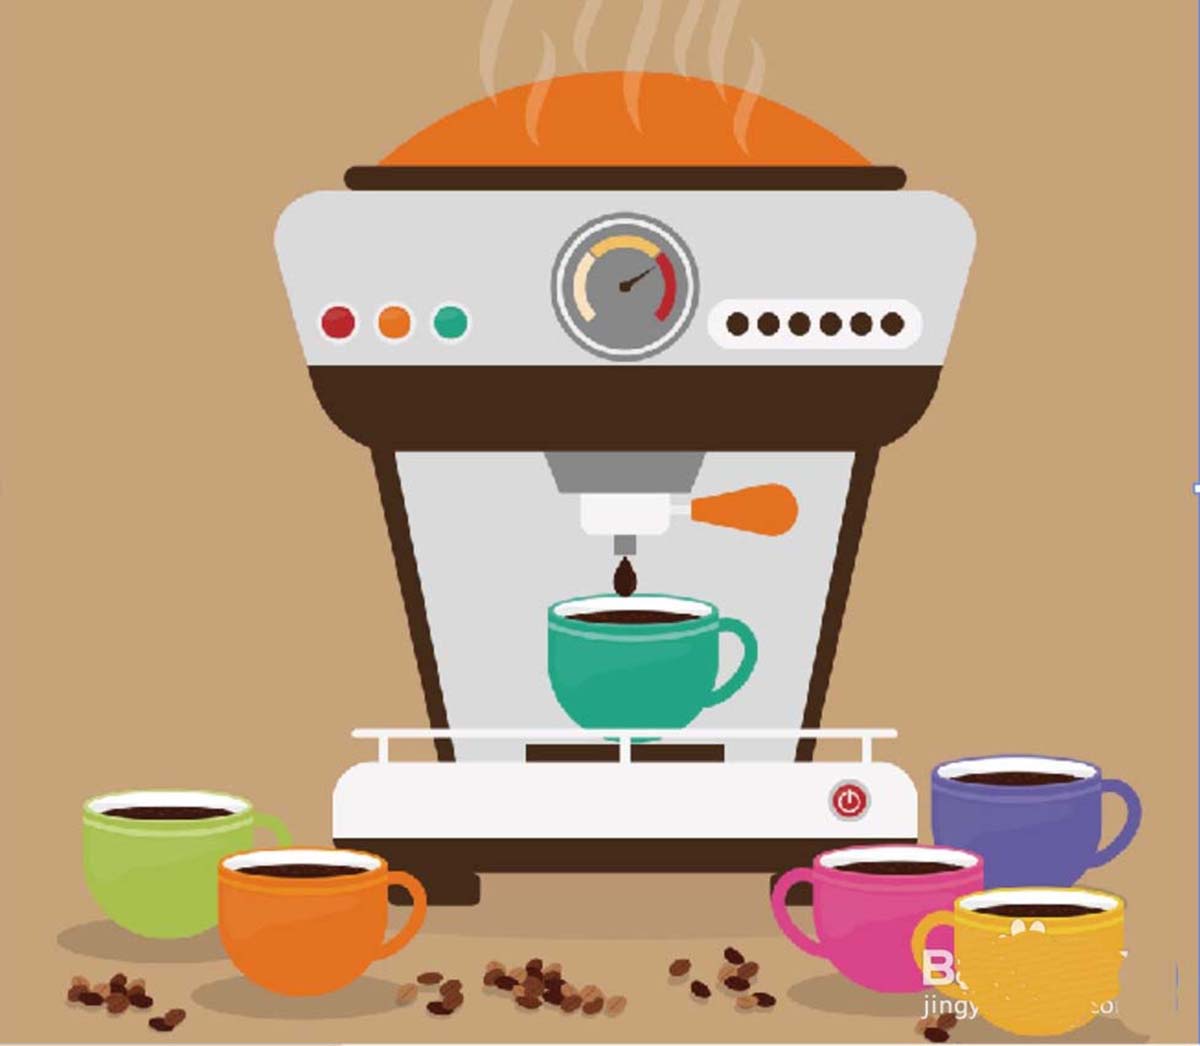 ai怎么设计咖啡机产品宣传图插画? ai画咖啡机产品图的技巧